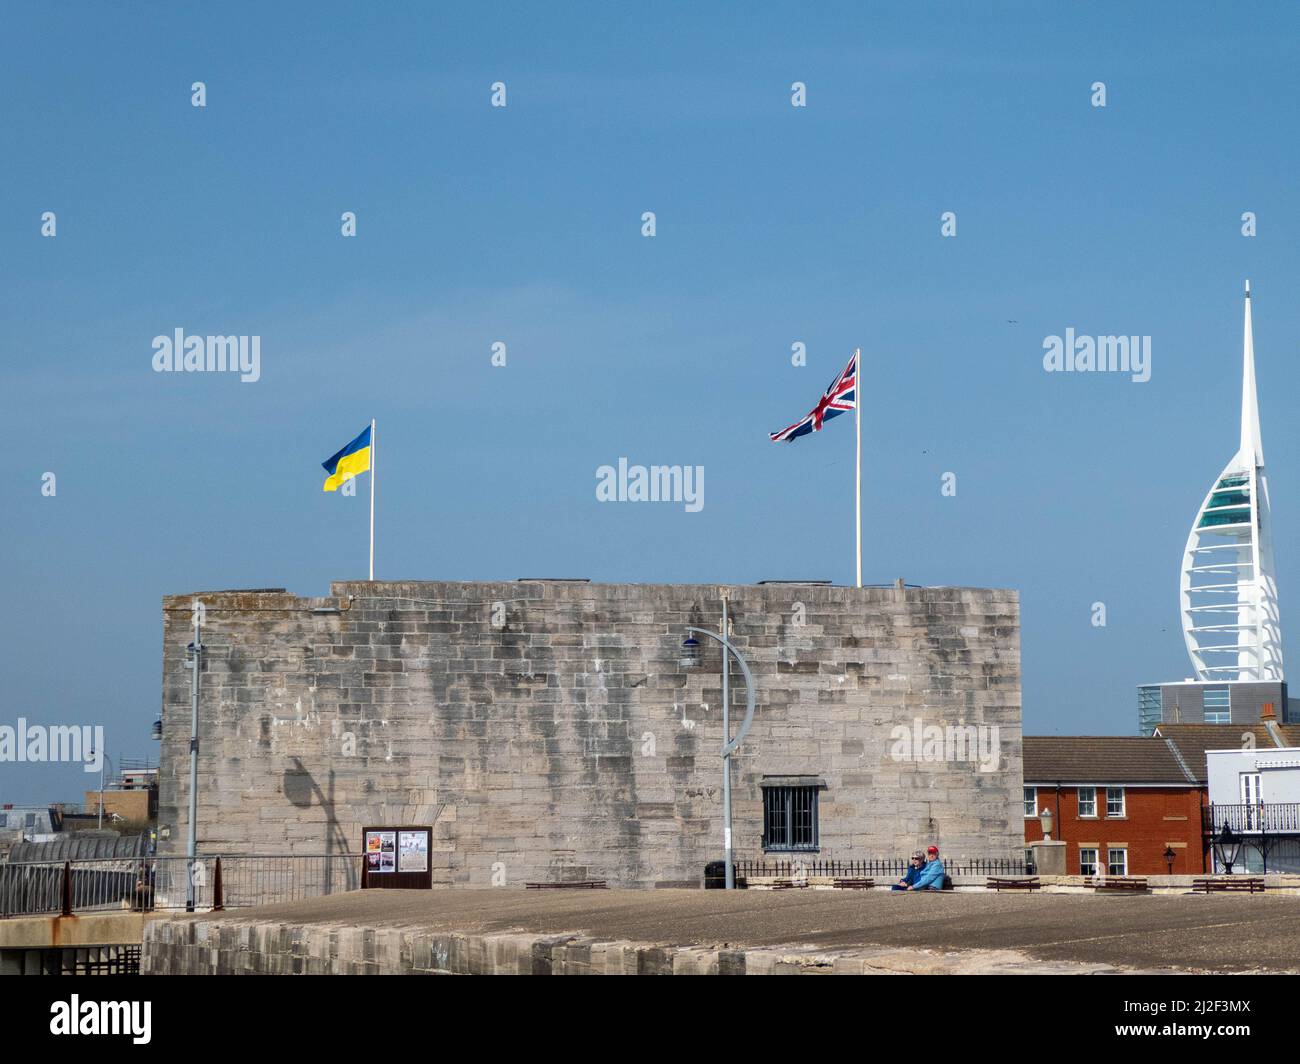 La tour carrée est l'une des parties les plus anciennes des fortifications de Portsmouth Angleterre volant les drapeaux du Royaume-Uni et de l'Ukraine avec le Spinnaker Towe Banque D'Images